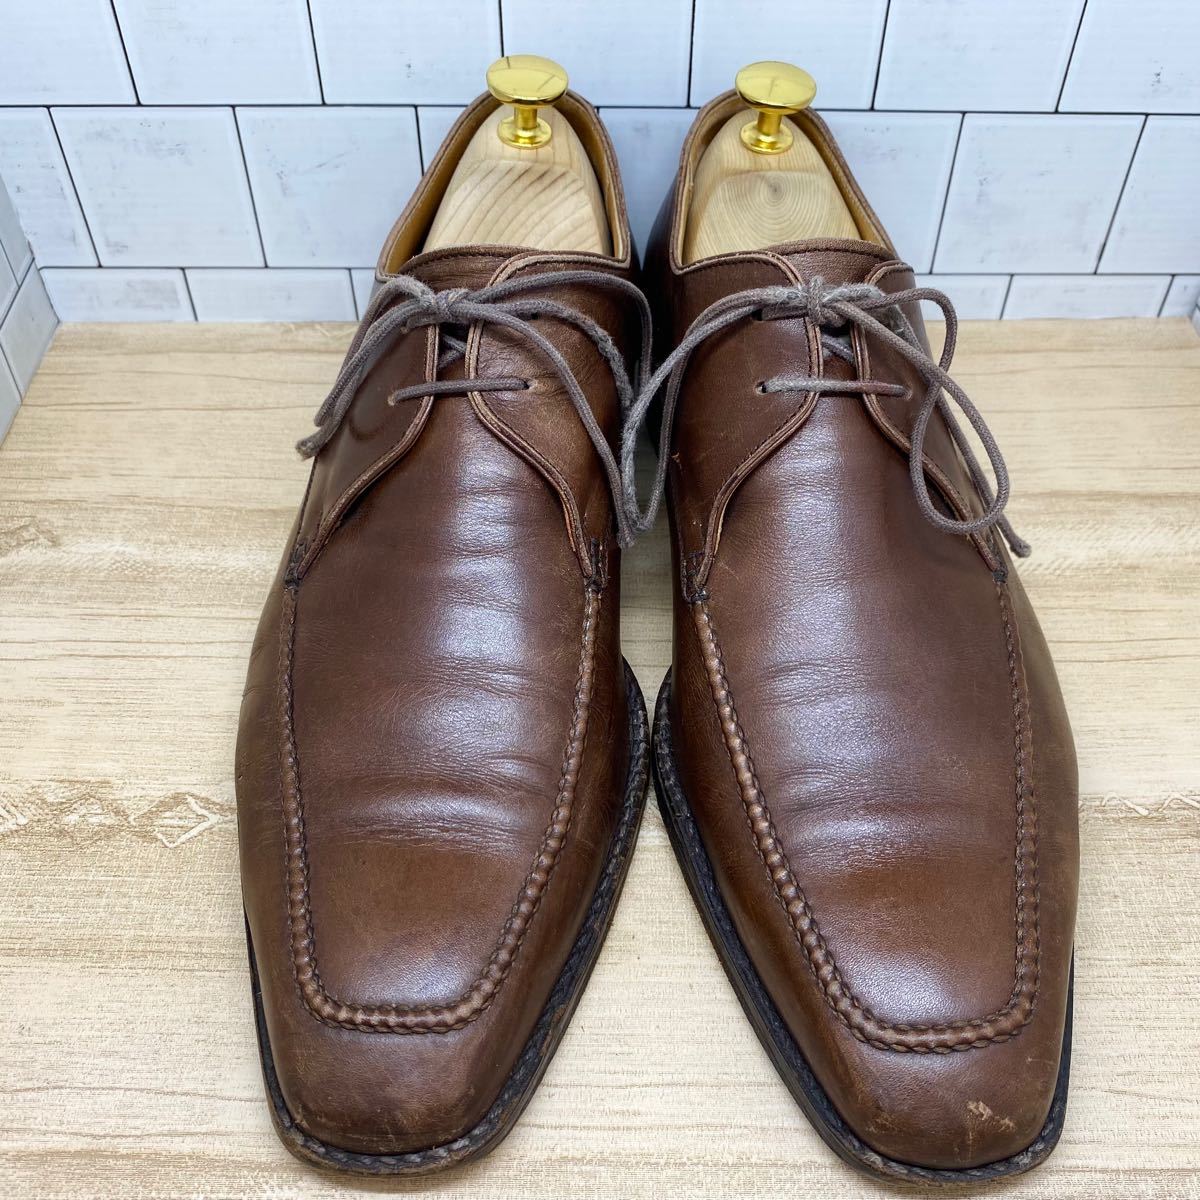 REGALリーガルメンズ革靴25.0cm uチップビジネスシューズ本革ブラウン茶色